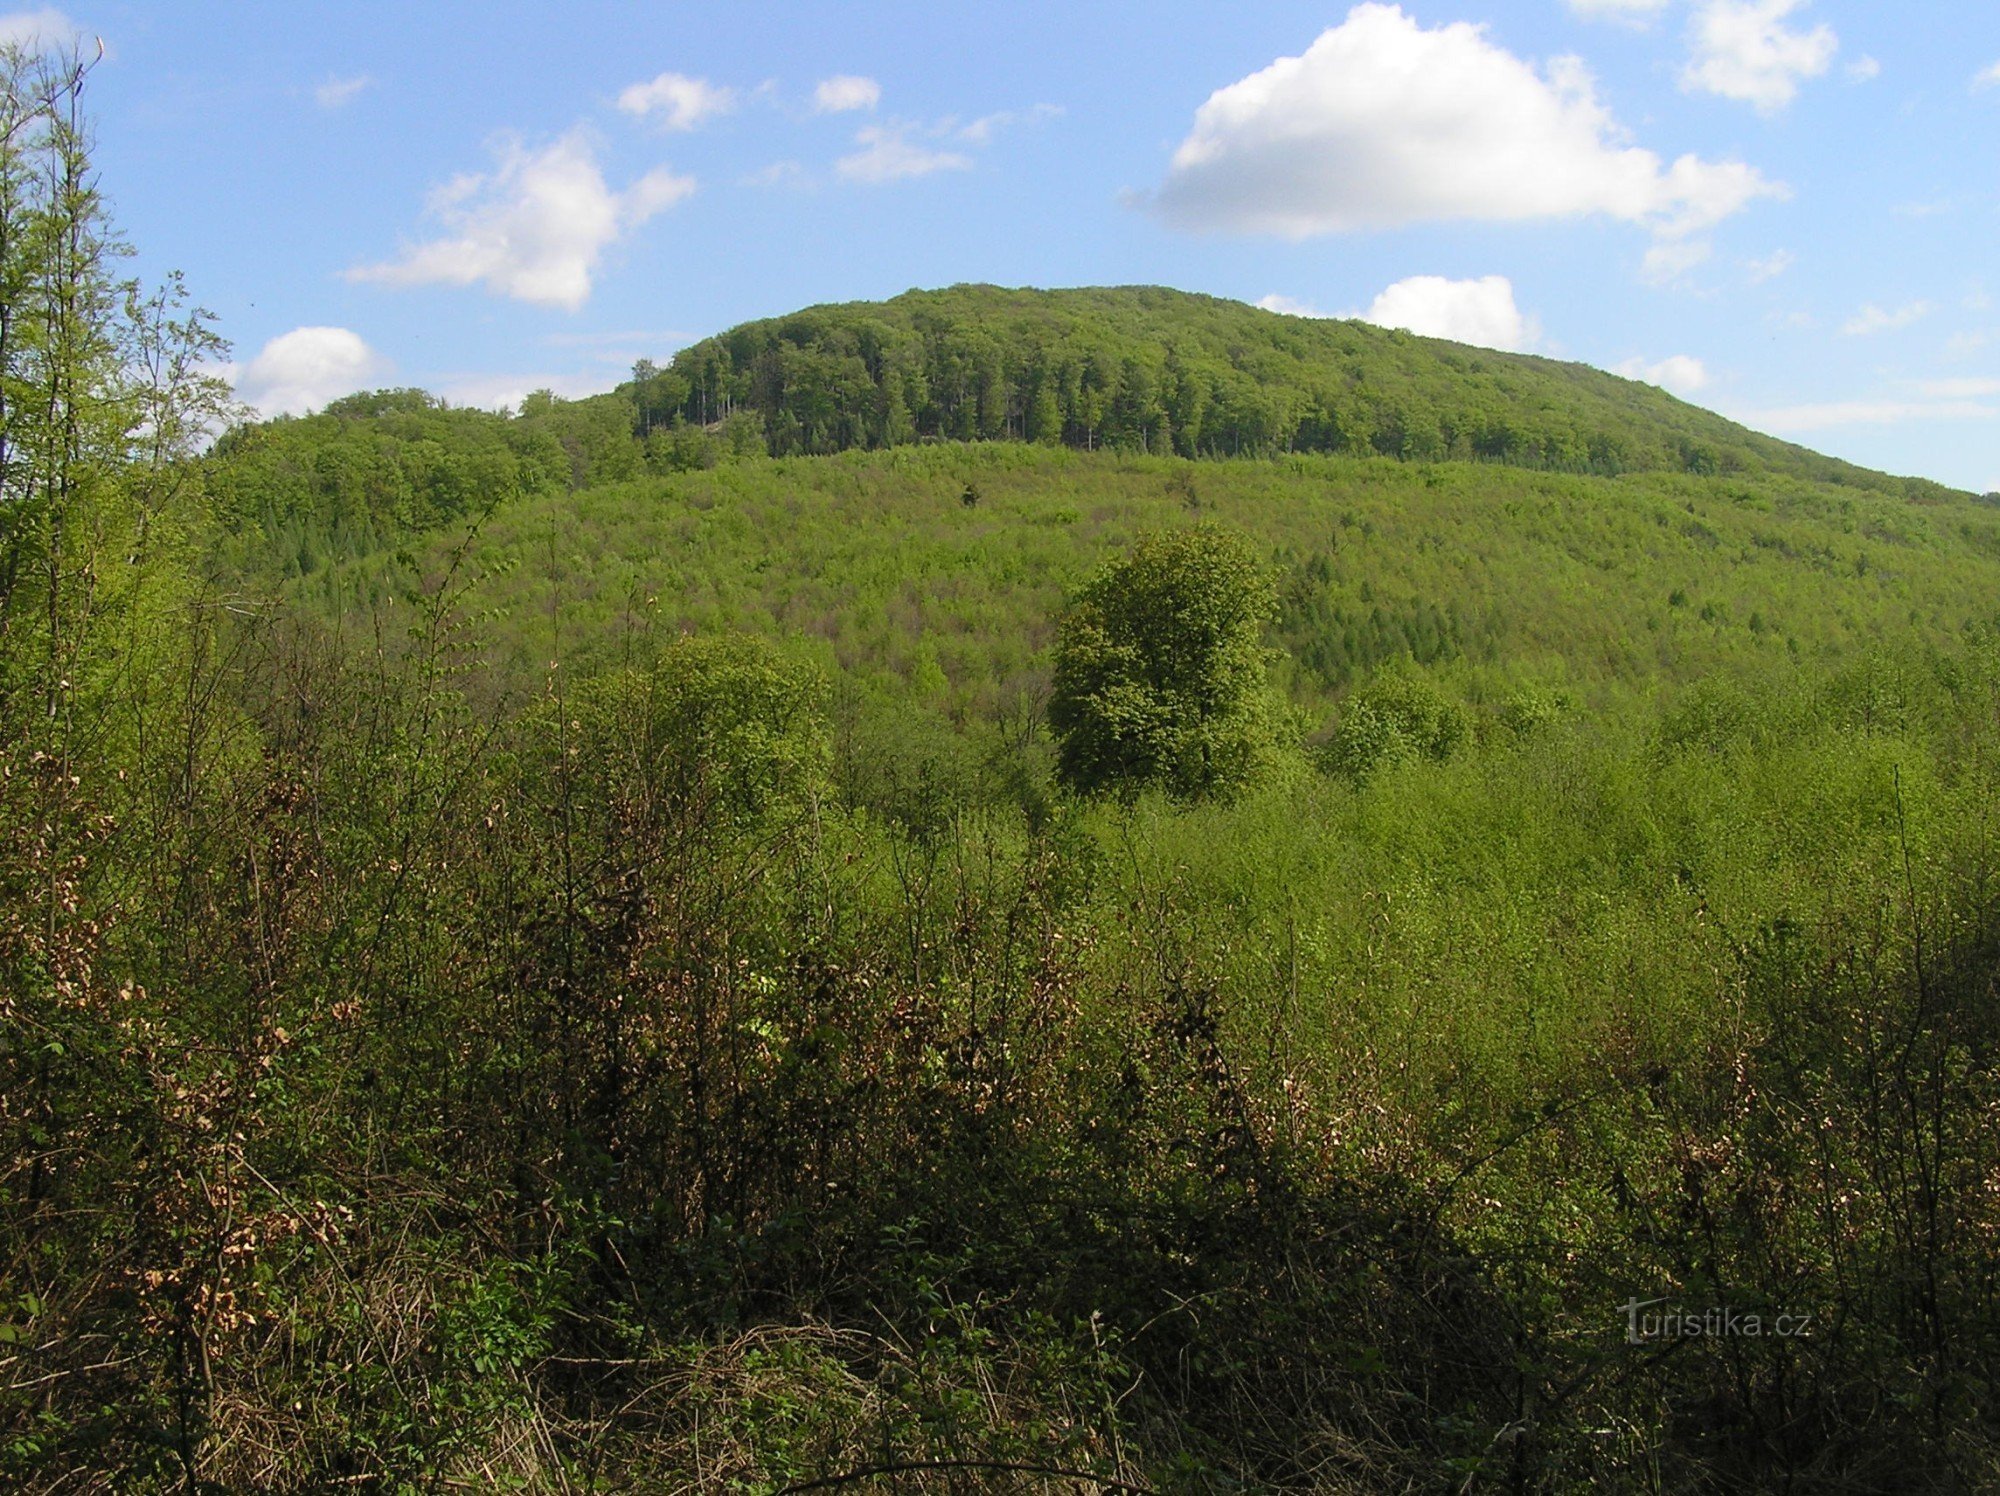 vista generale di Holý kopec da sud-ovest - la riserva è occupata da un vecchio poro forestale